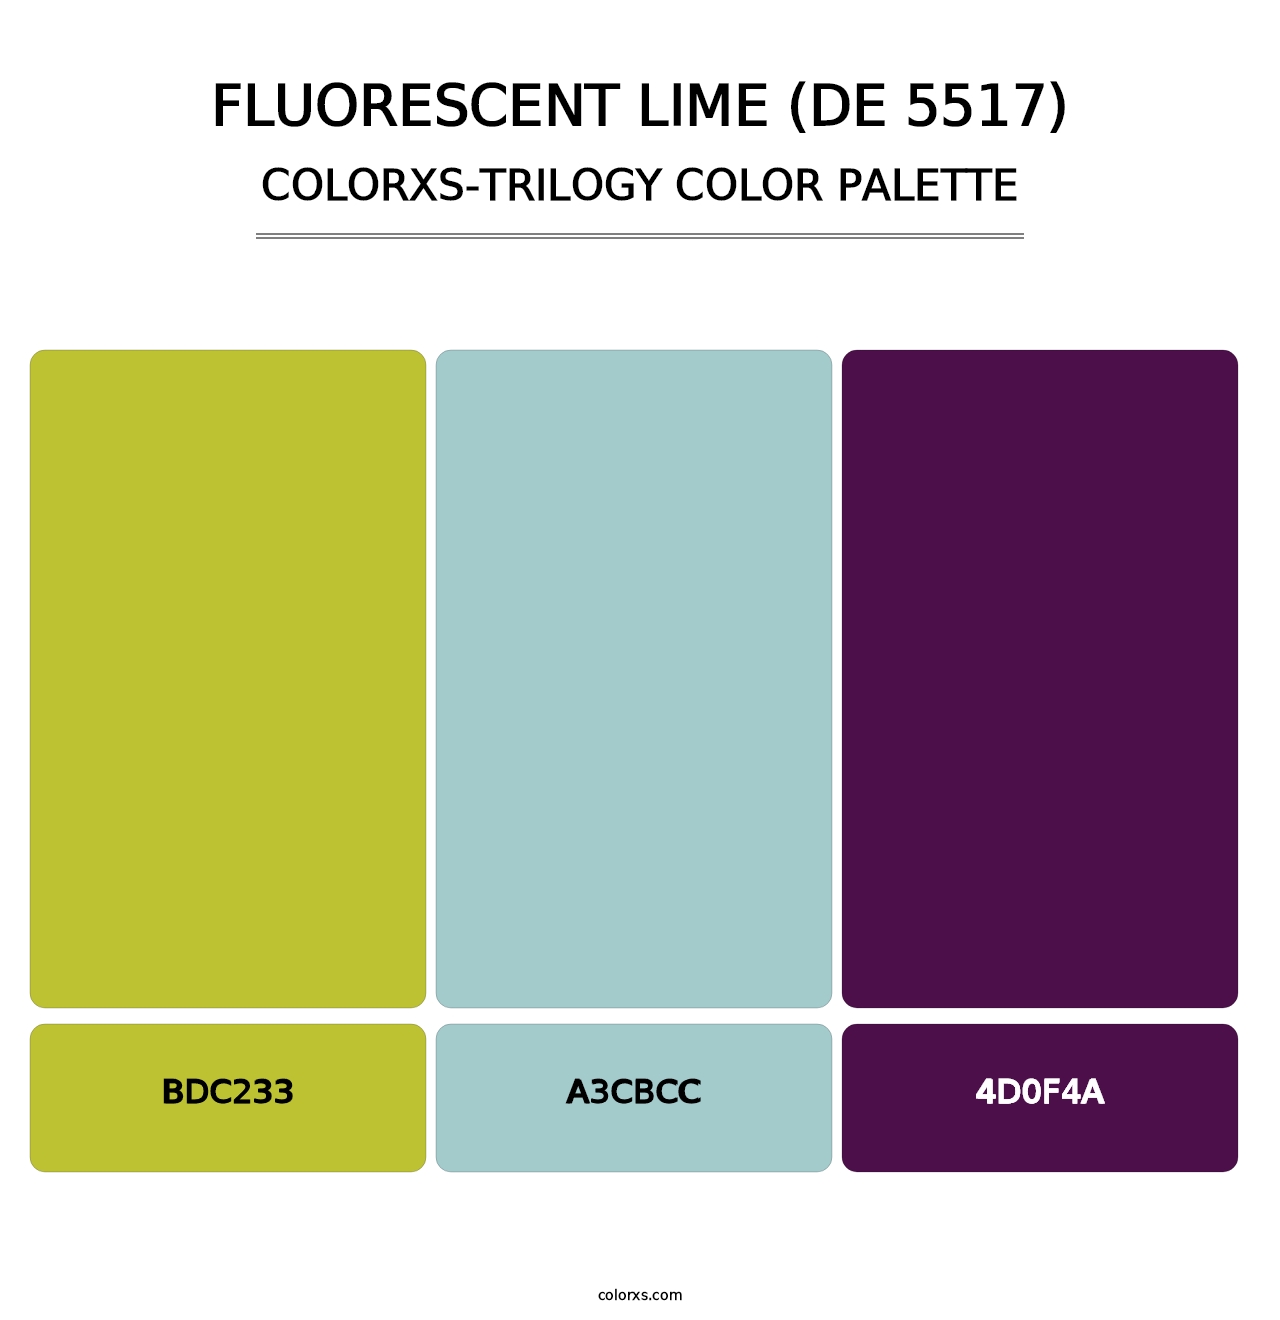 Fluorescent Lime (DE 5517) - Colorxs Trilogy Palette